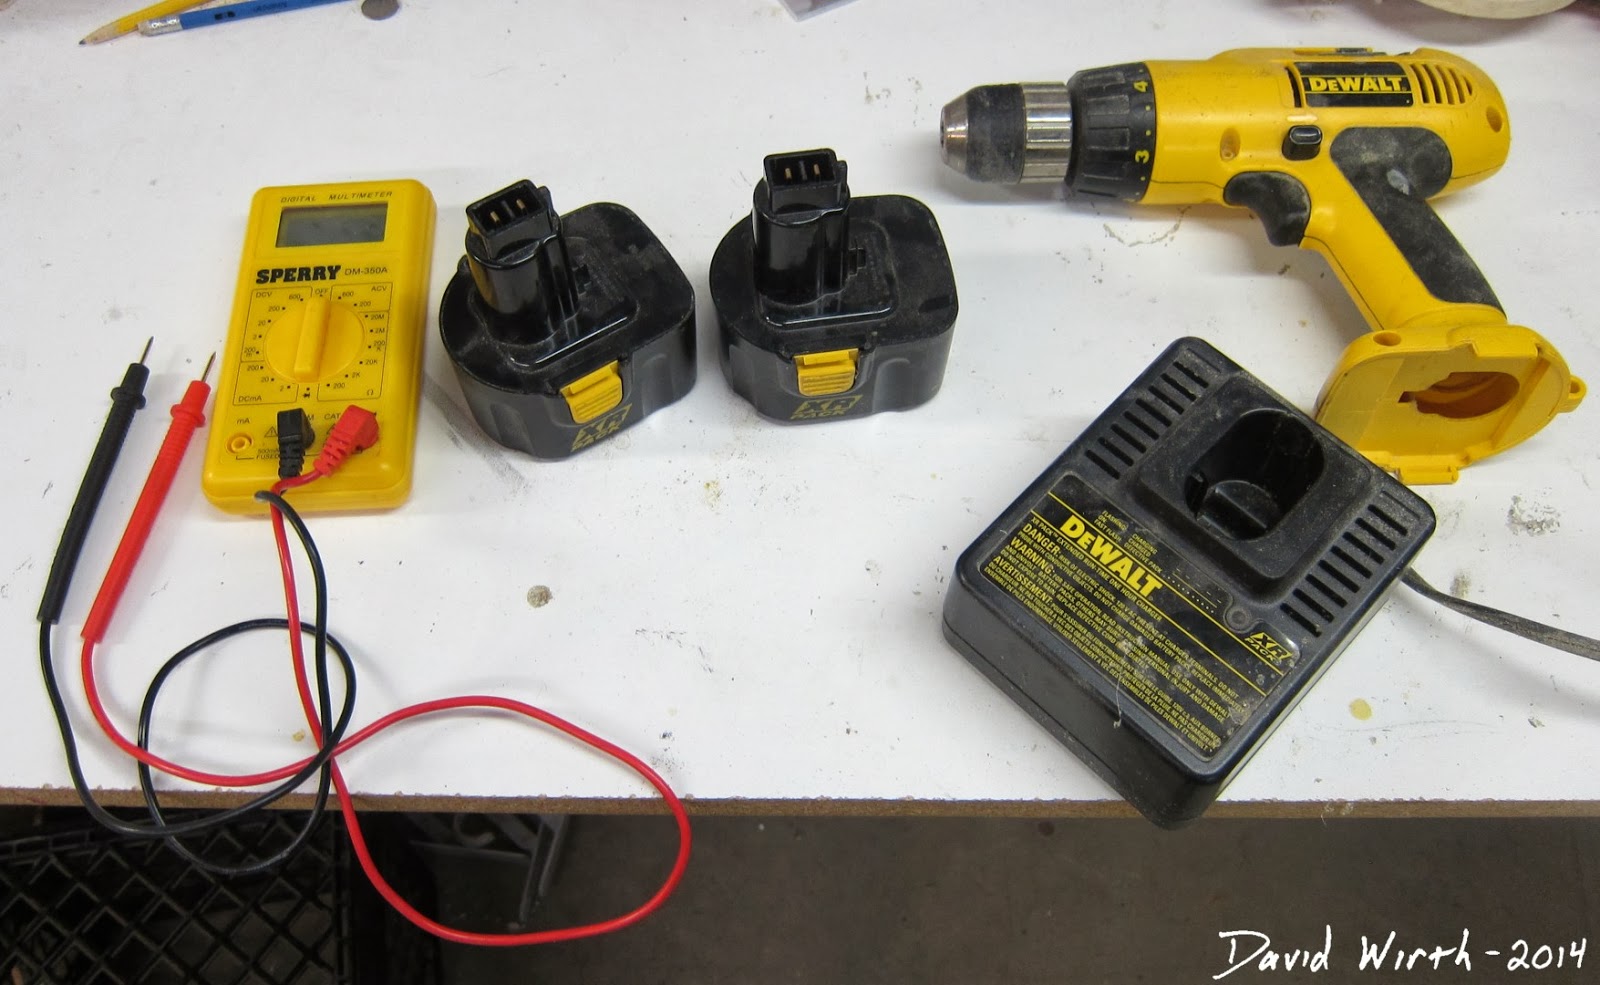 dead drill battery, power tool, ni-cad, nicad, lithium ion, dewalt 